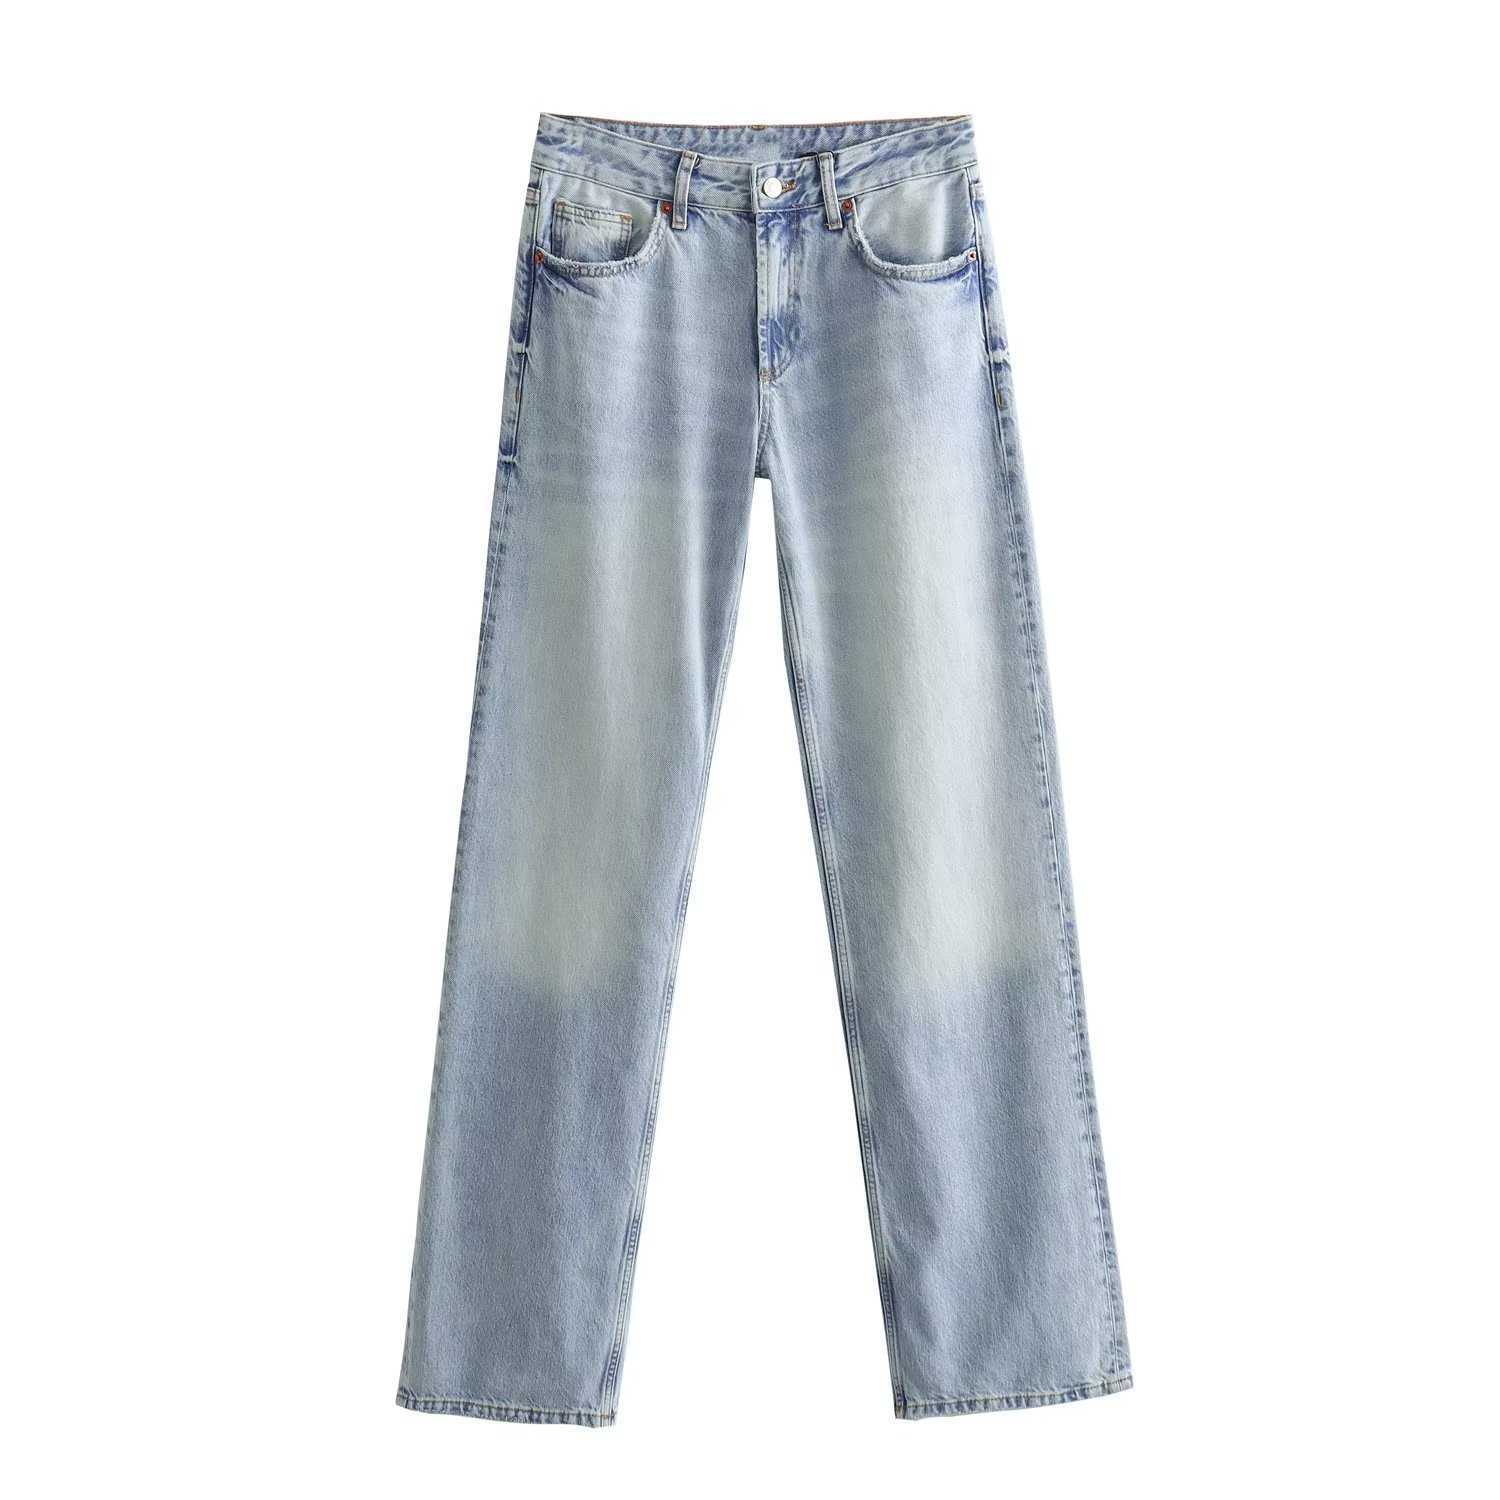 Осенний продукт женский случайный универсальный широкий широкий нога средняя талия длинные джинсы MS7870